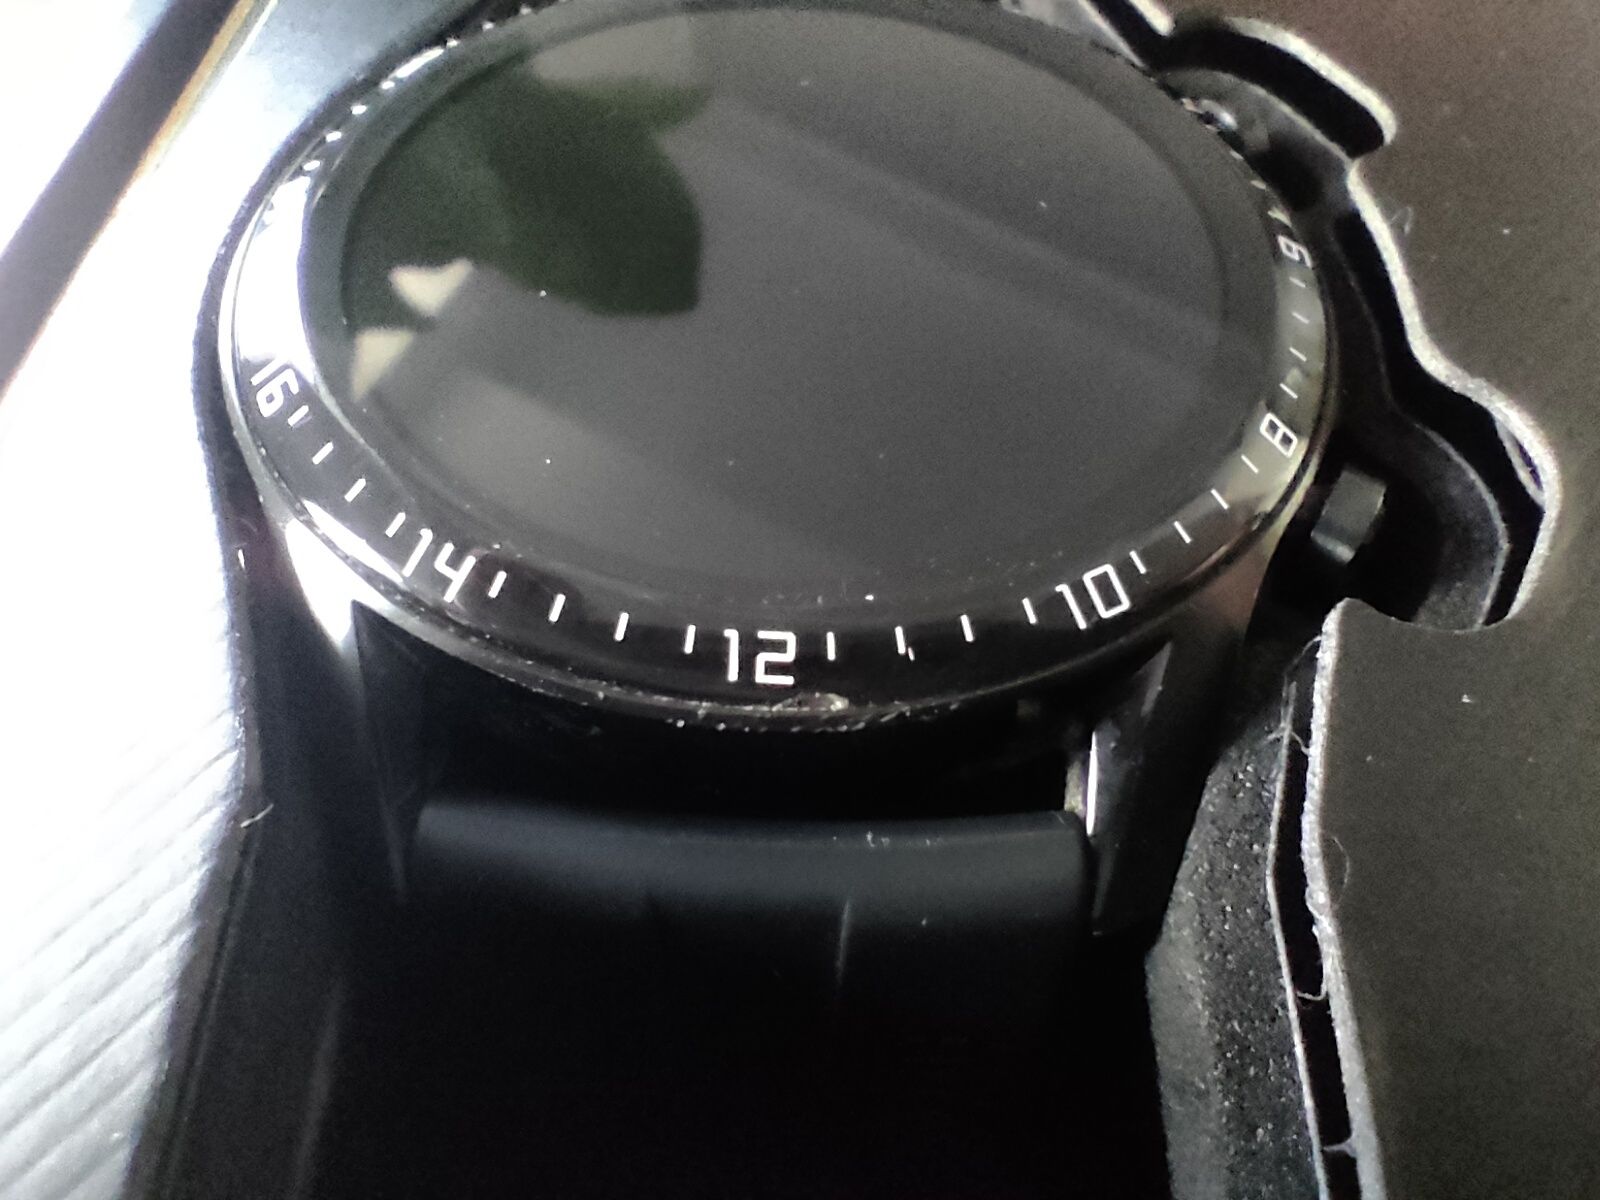 Huawei watch gt2 +szkło nowe nie otwierane